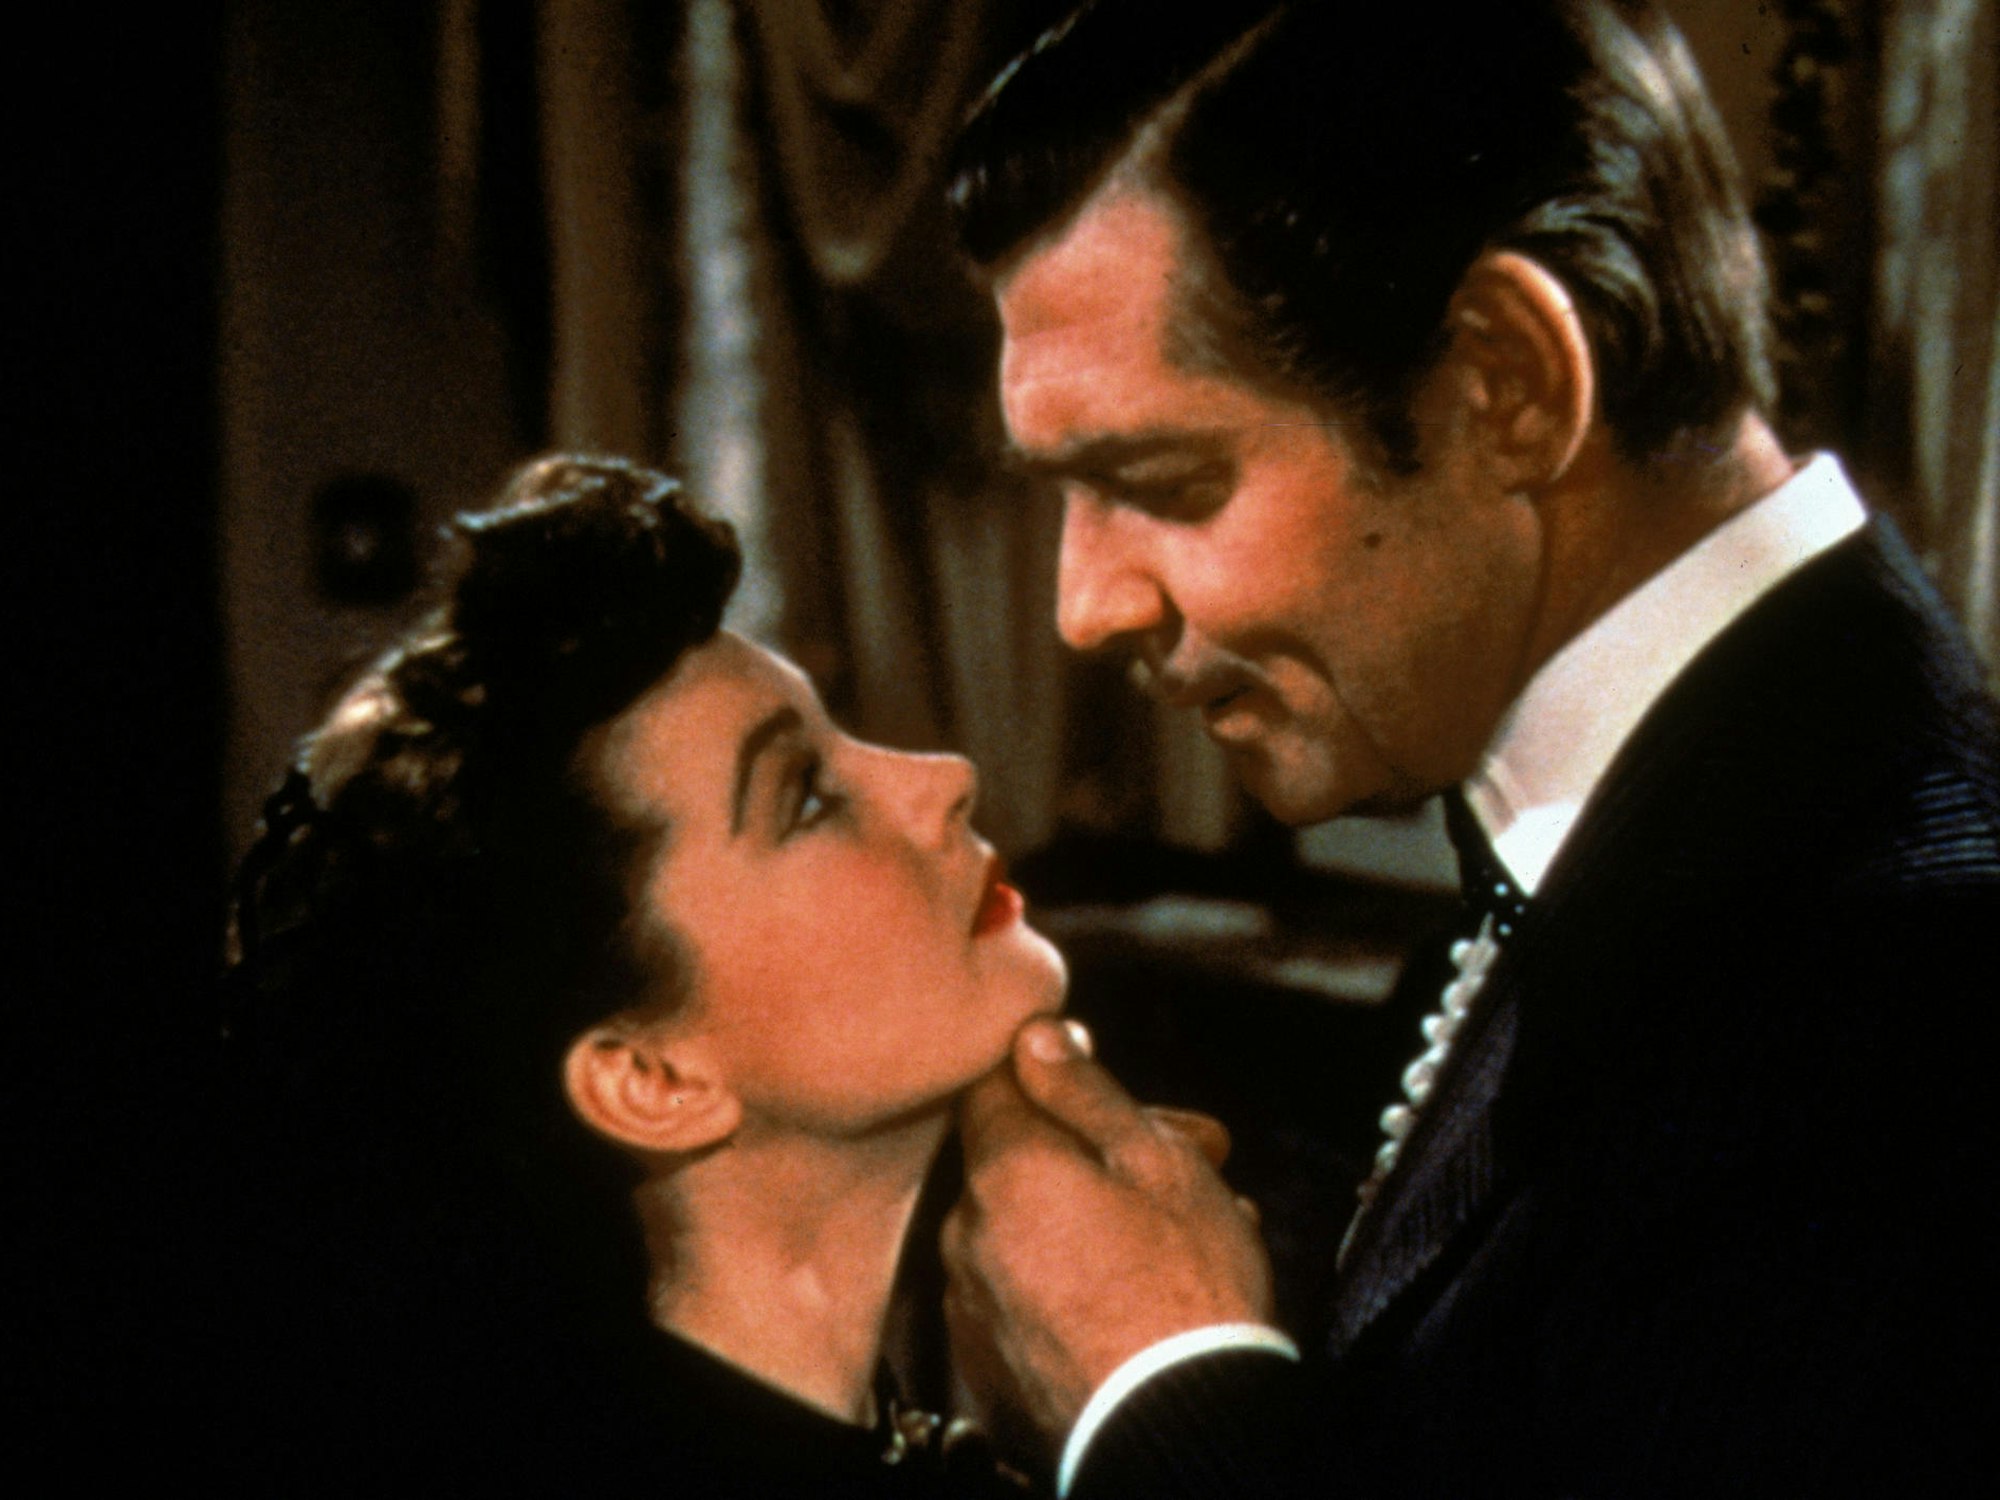 Vivien Leigh und Clark Gable als Scarlett O'Hara und Rhett Bulter 1939 in David O'Selznick's Südstaaten-Schinken "Vom Winde verweht"